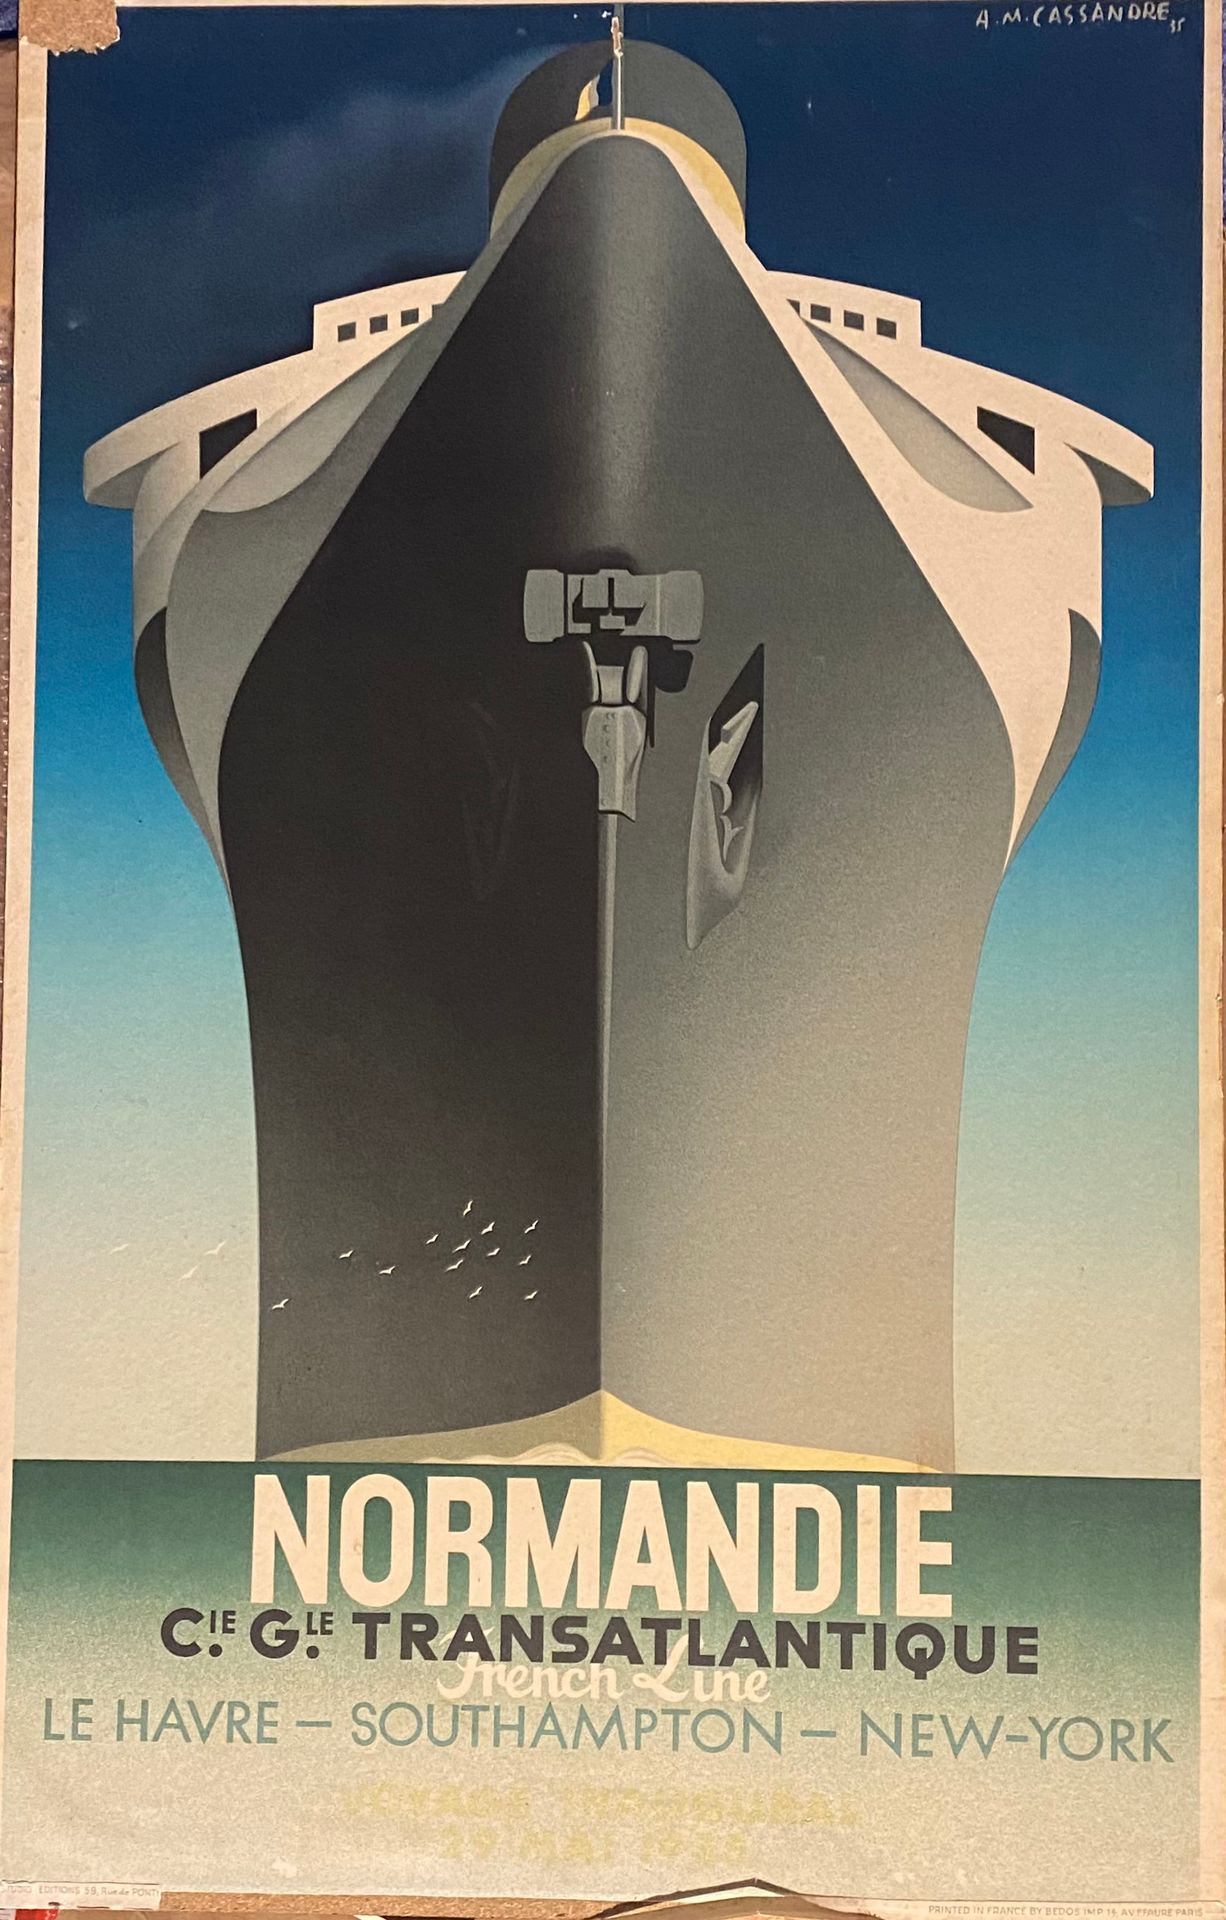 Null CASSANDRE A. M, d'après 

Normandie. Compagnie Générale Transatlantique Fre&hellip;